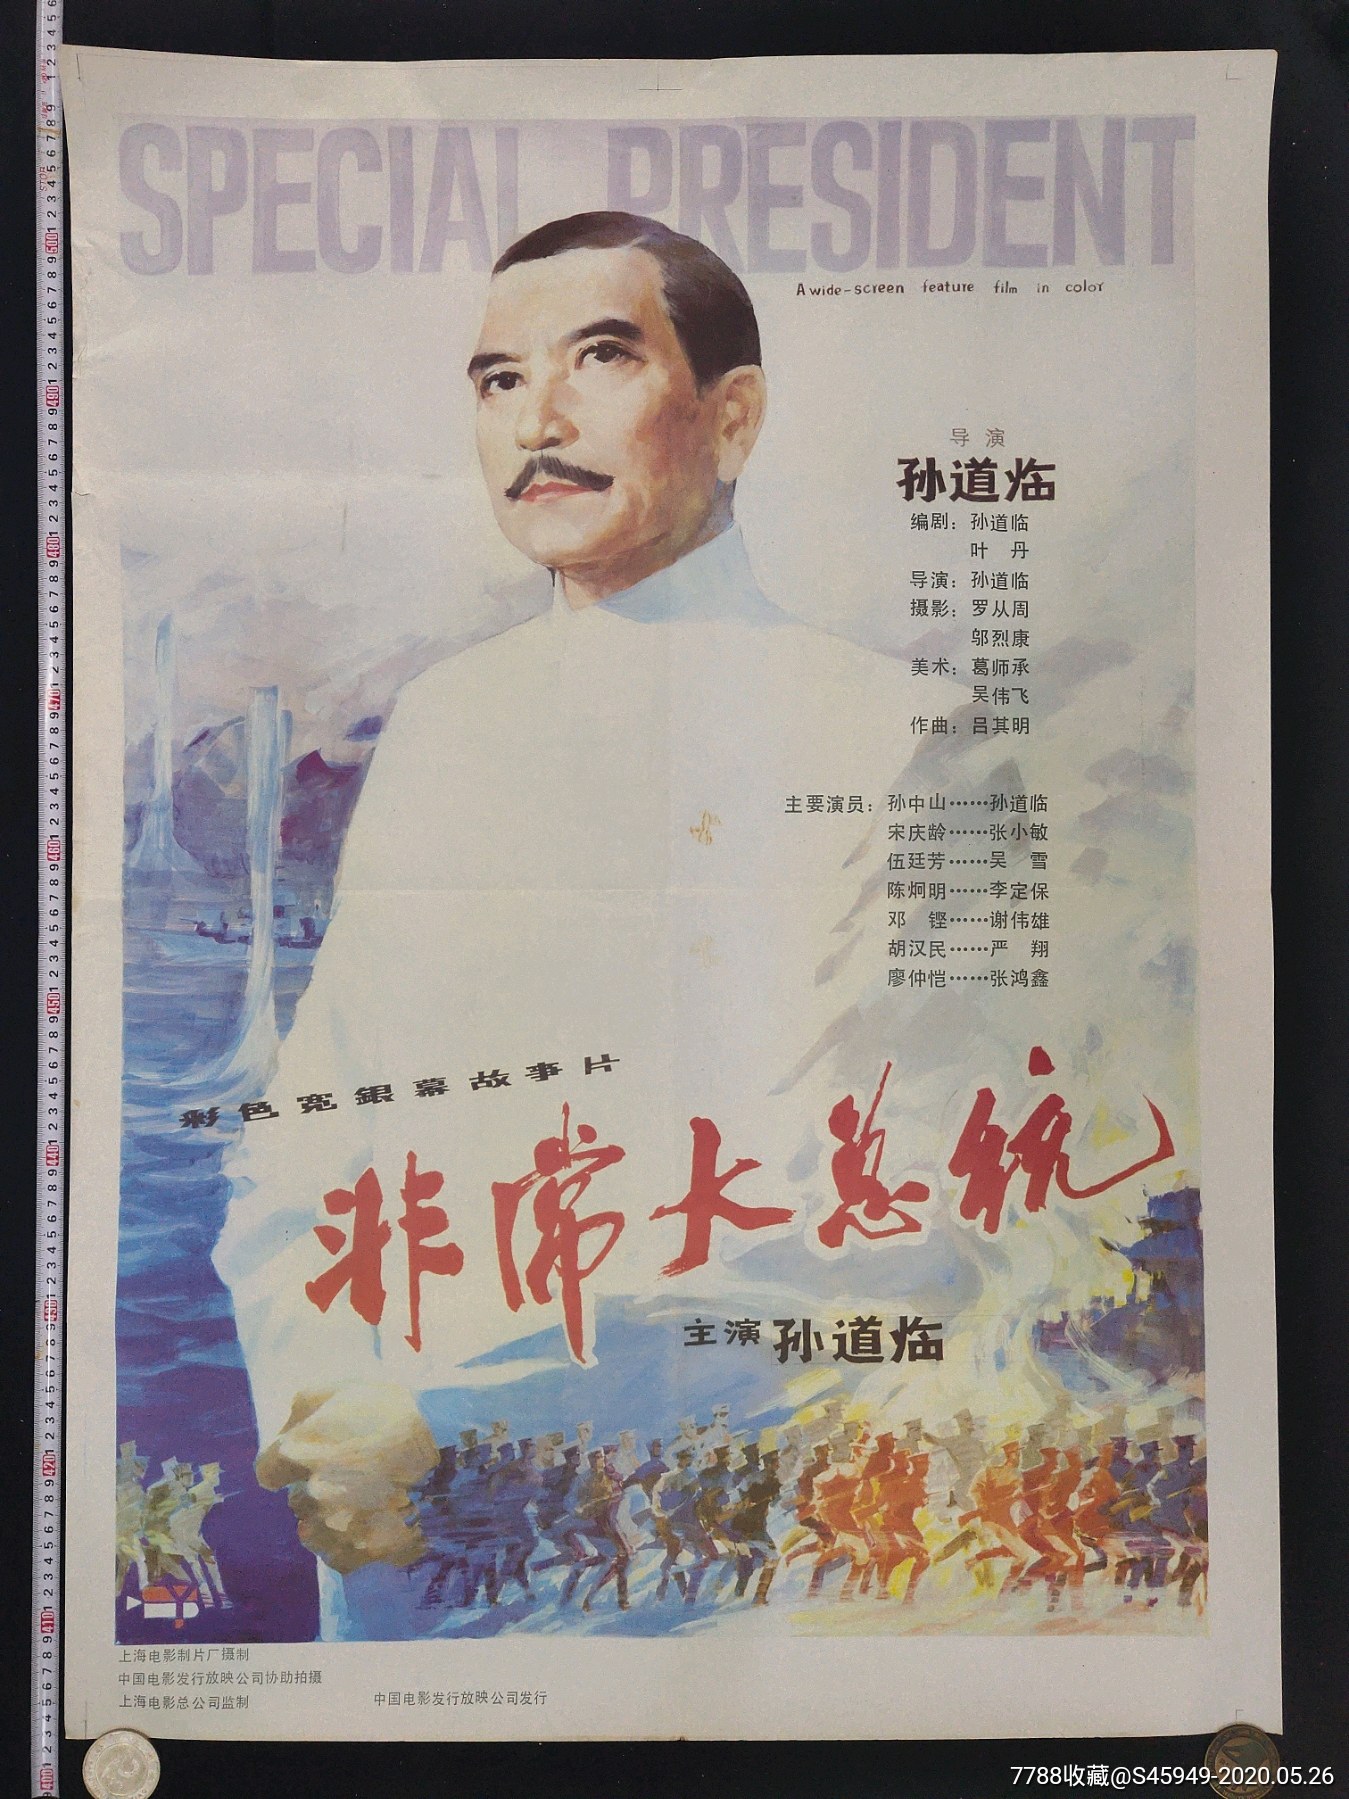 上海电影制片厂摄制《非常大总统》电影海报(大全开)_价格21元_第1张